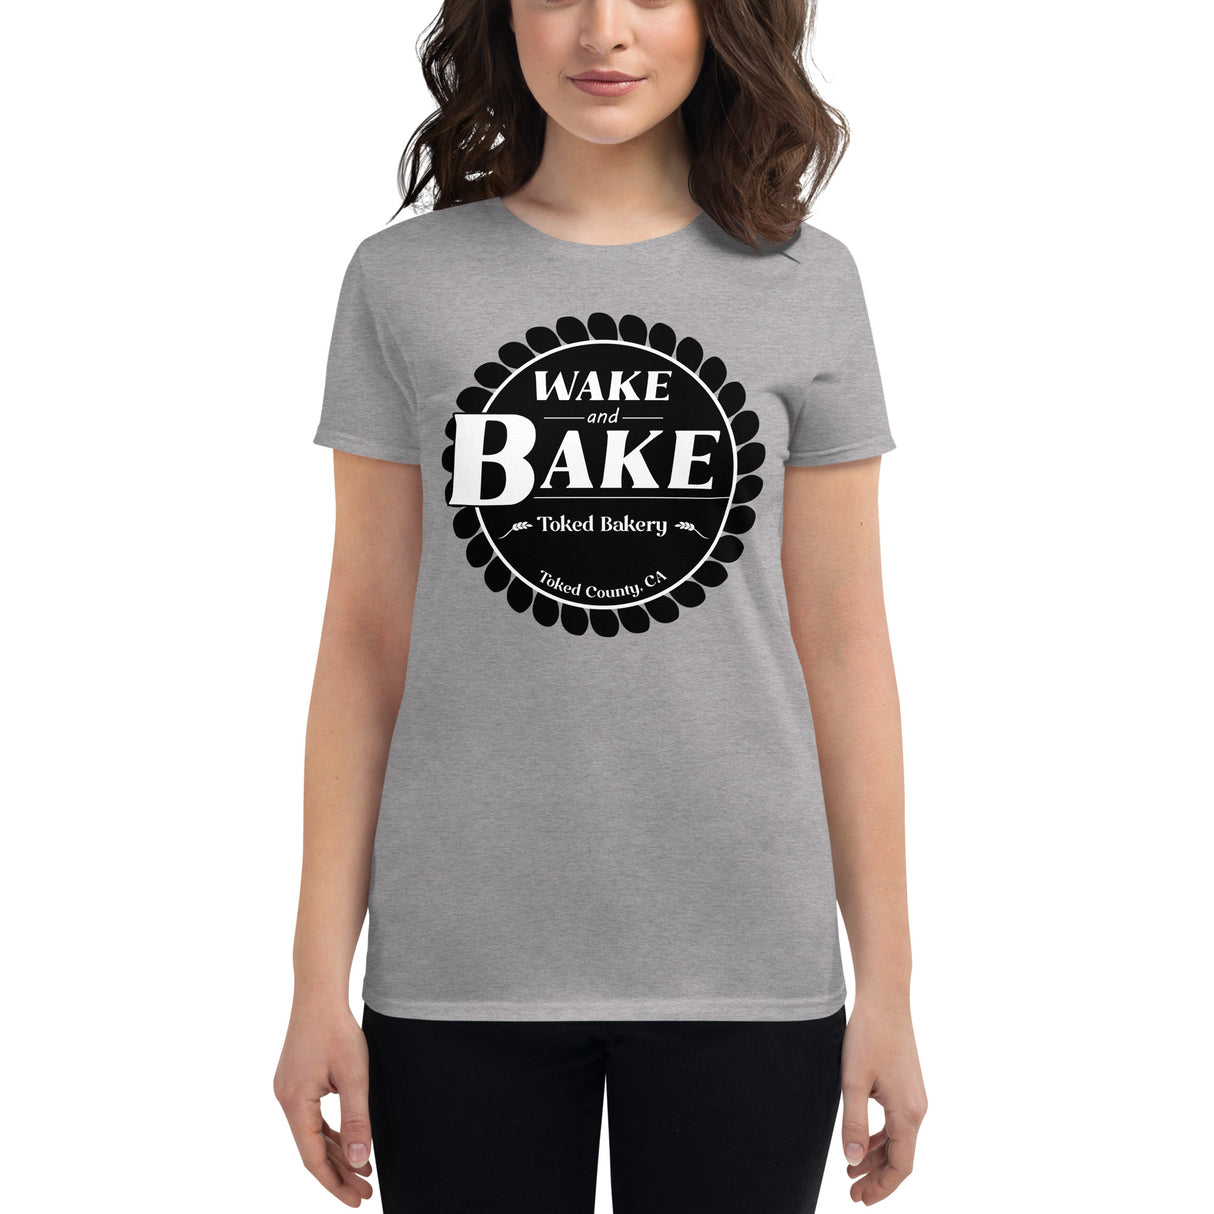 Wake and Bake T-Shirt